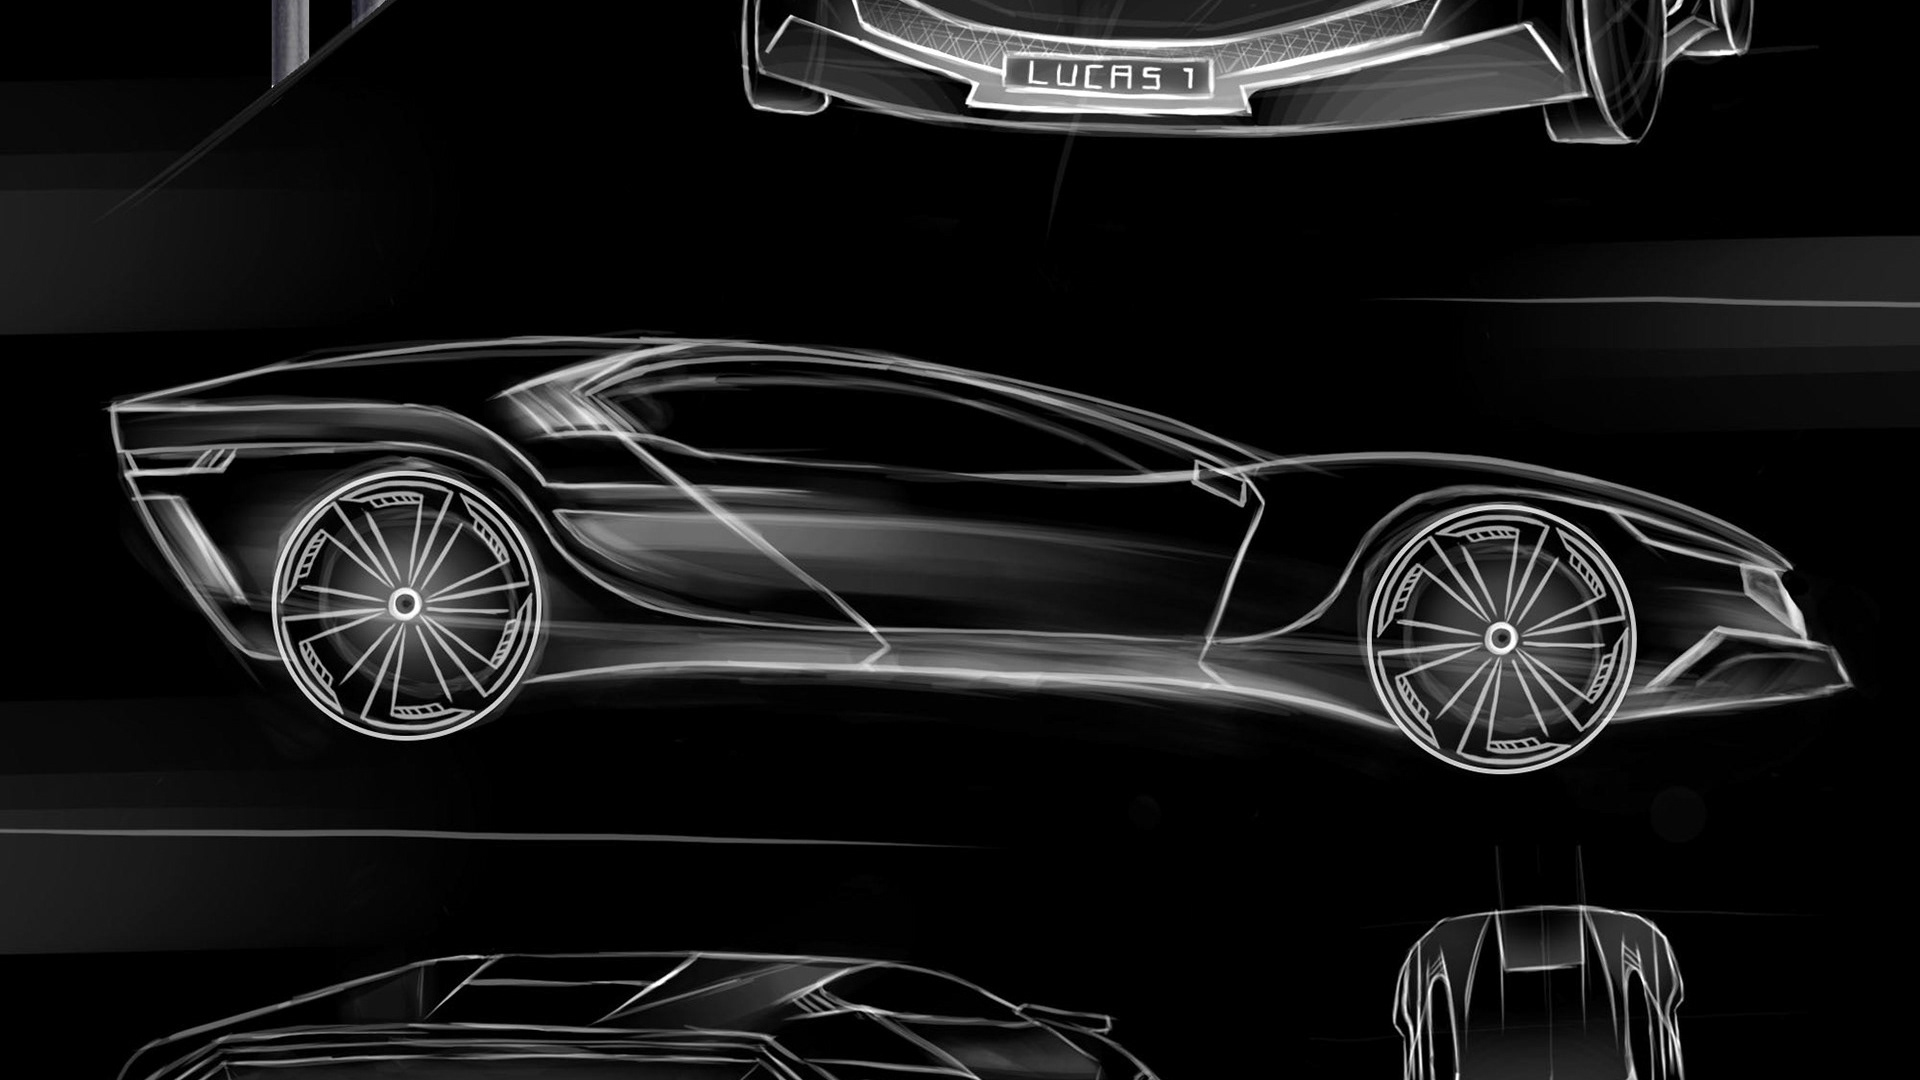 futuristic car sketch